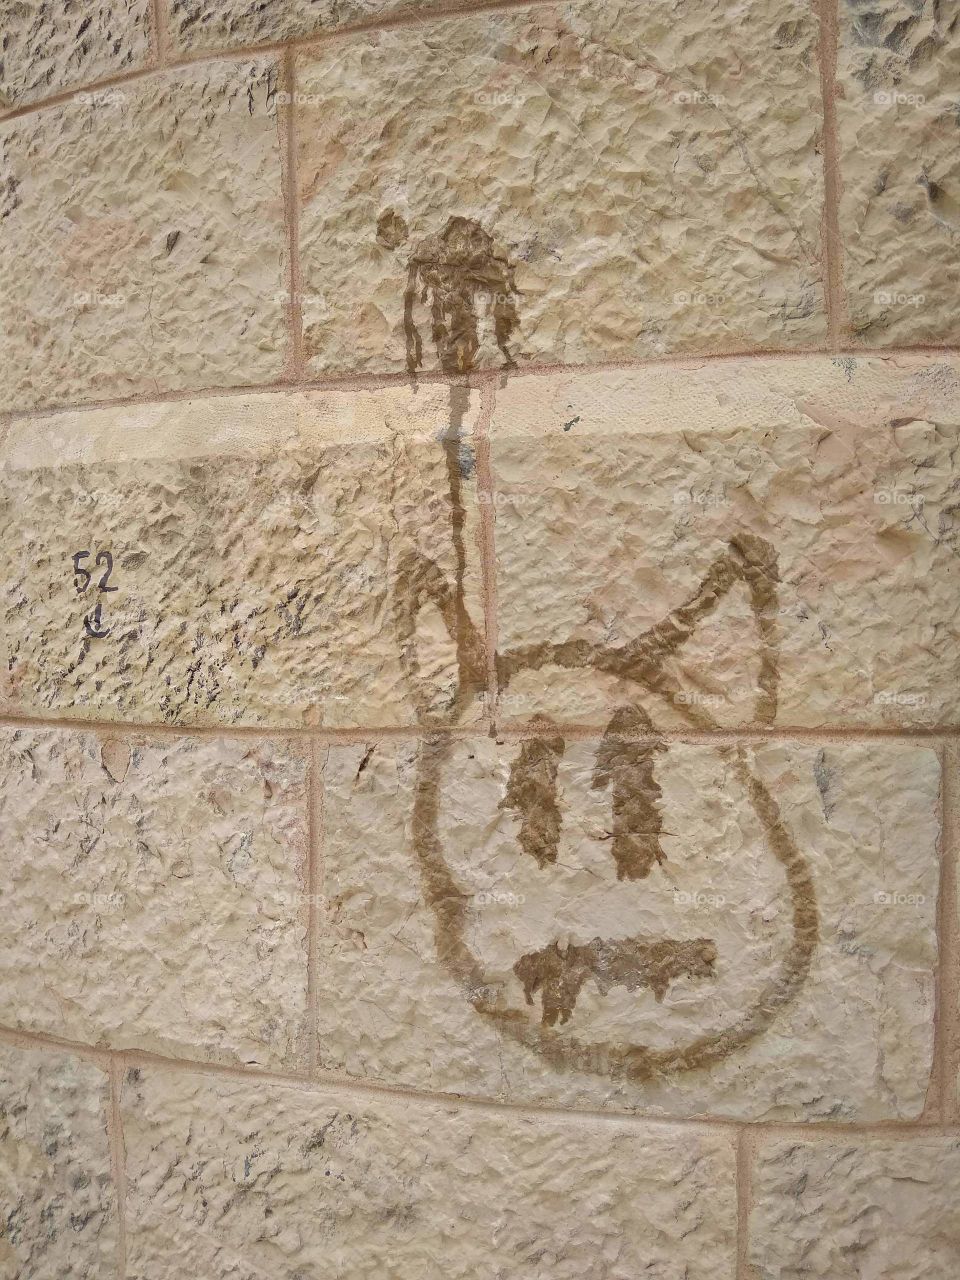 Unique Jerusalem art